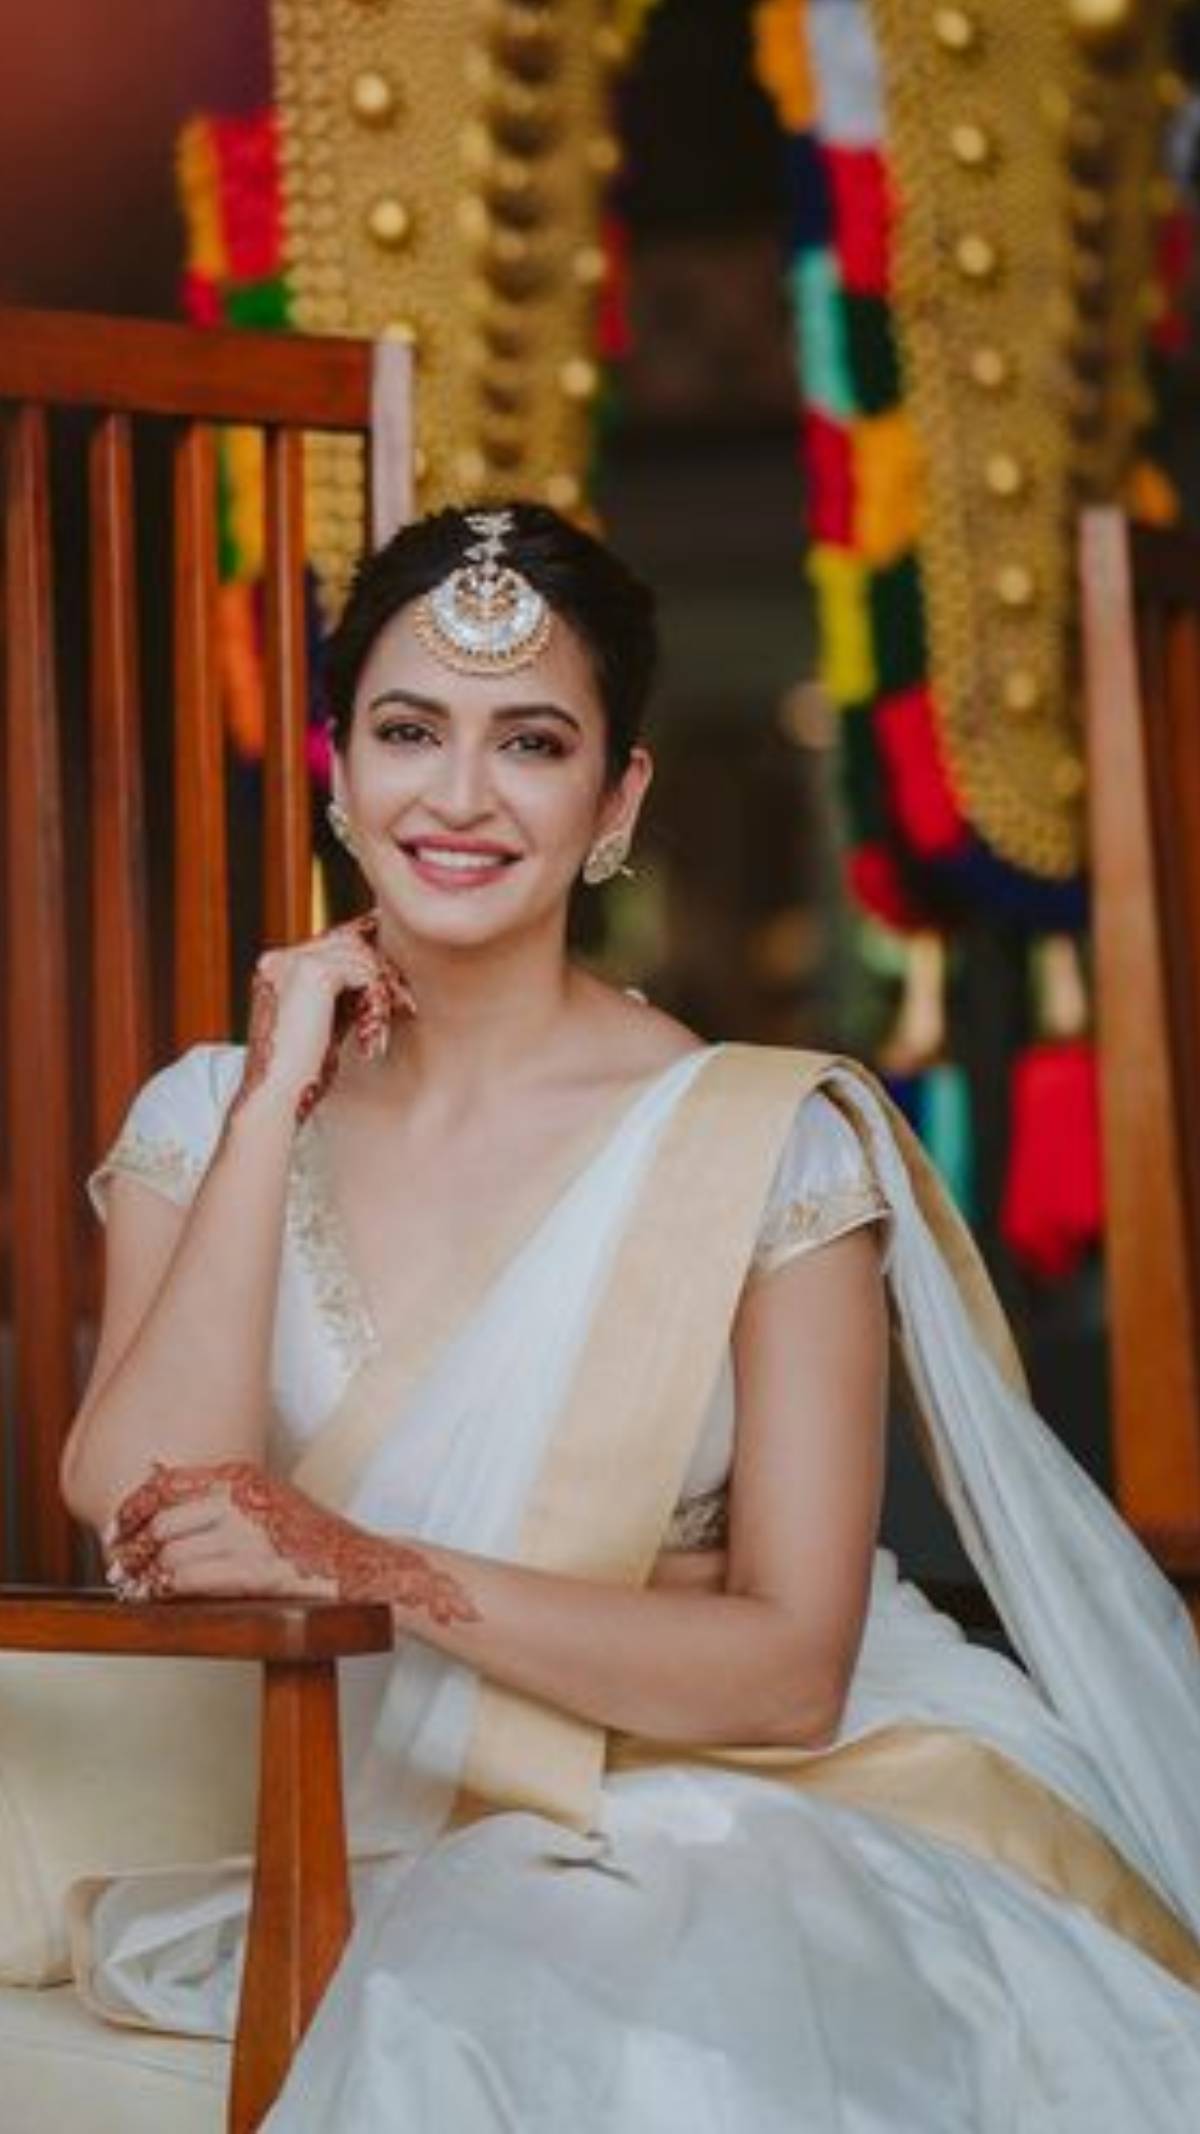 Kriti Kharbanda looks gorgeous in the white saree with a golden border